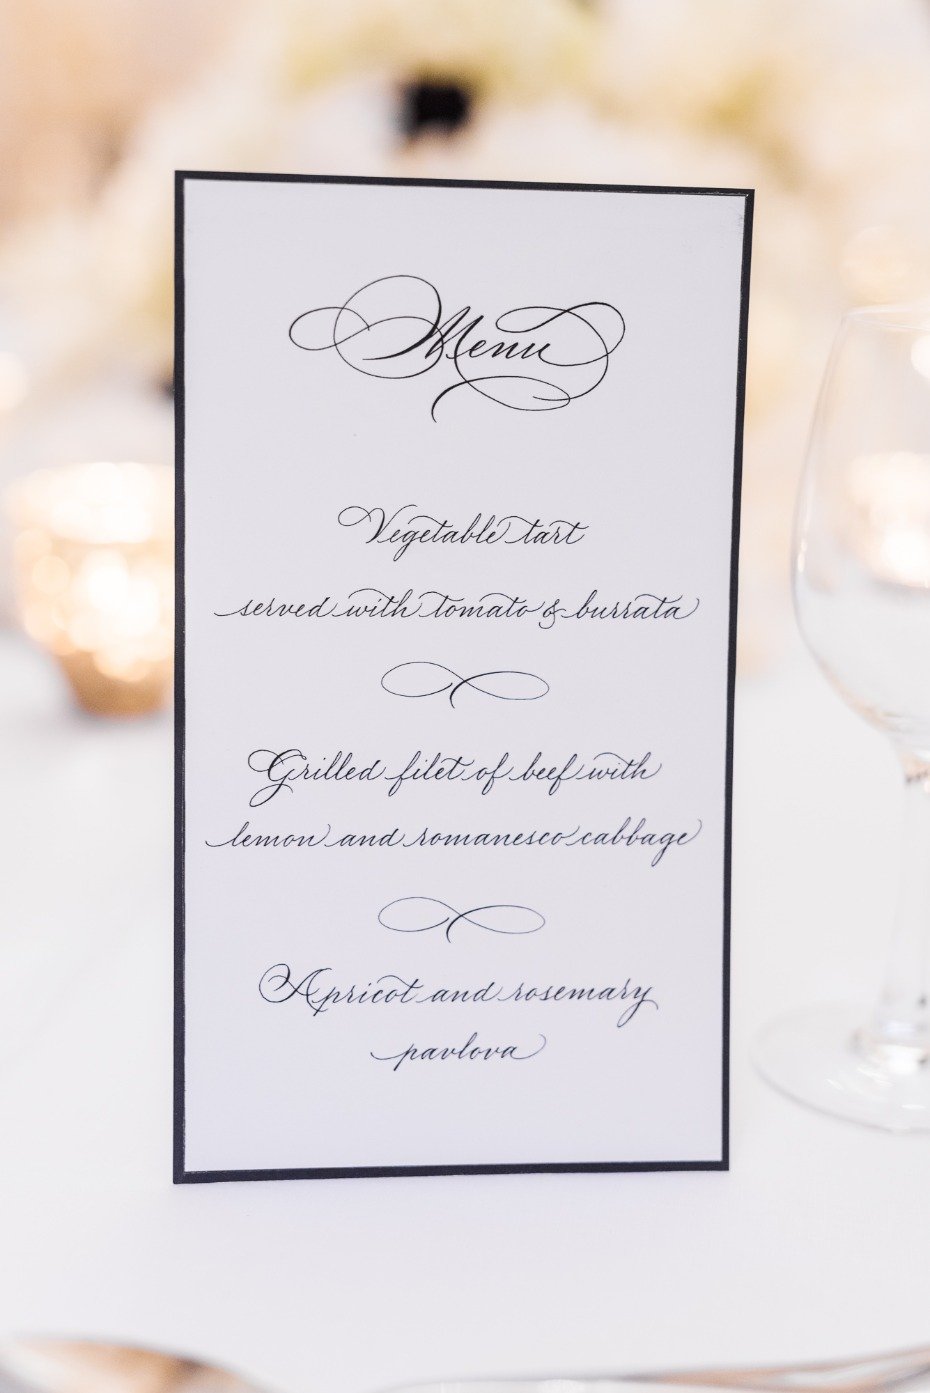 Classic menu for a Paris wedding